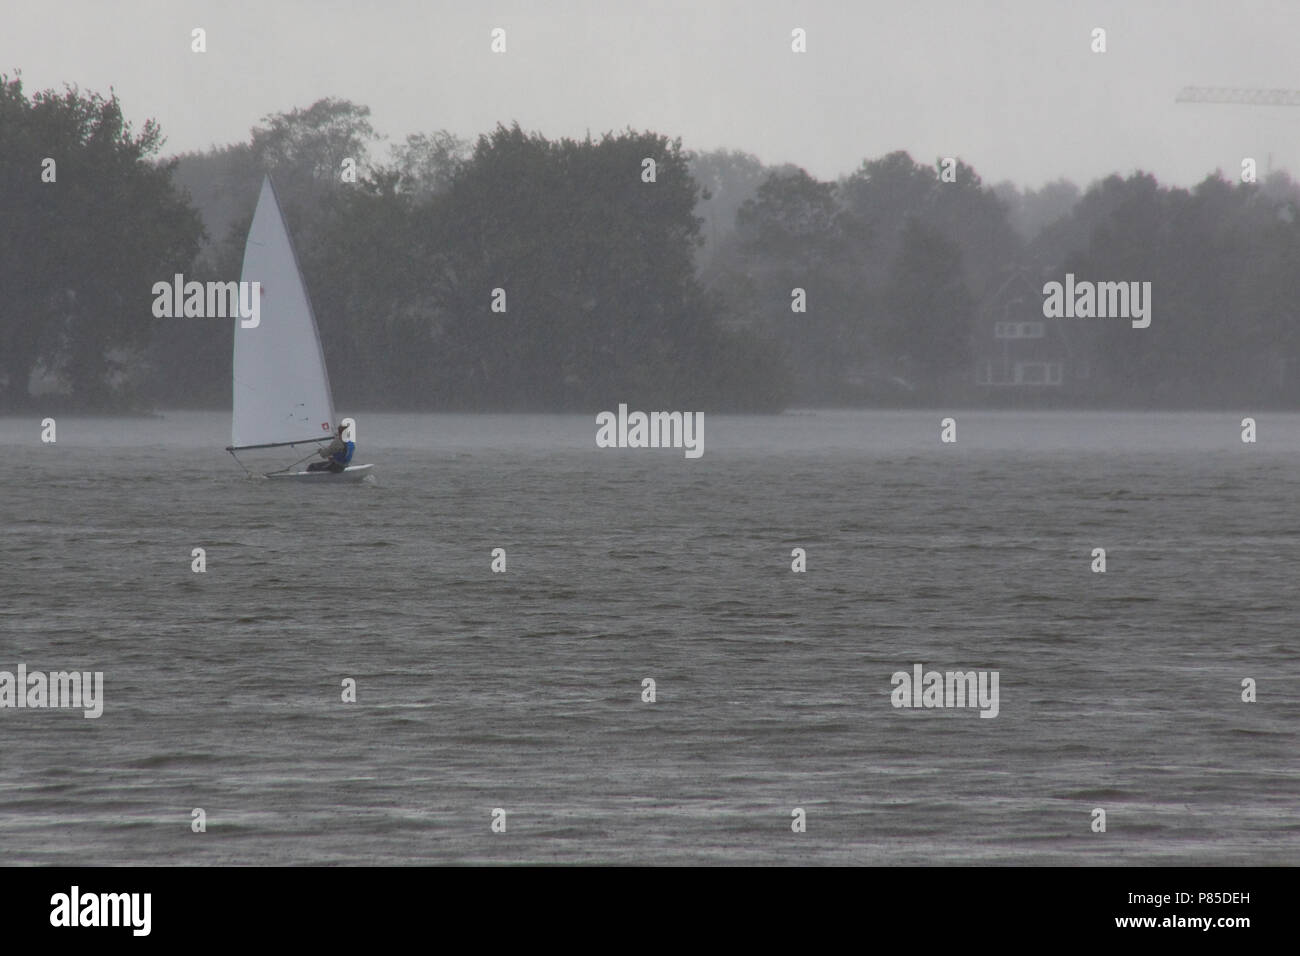 Zeilen in Nieuwkoop; Sailing at Nieuwkoop Stock Photo